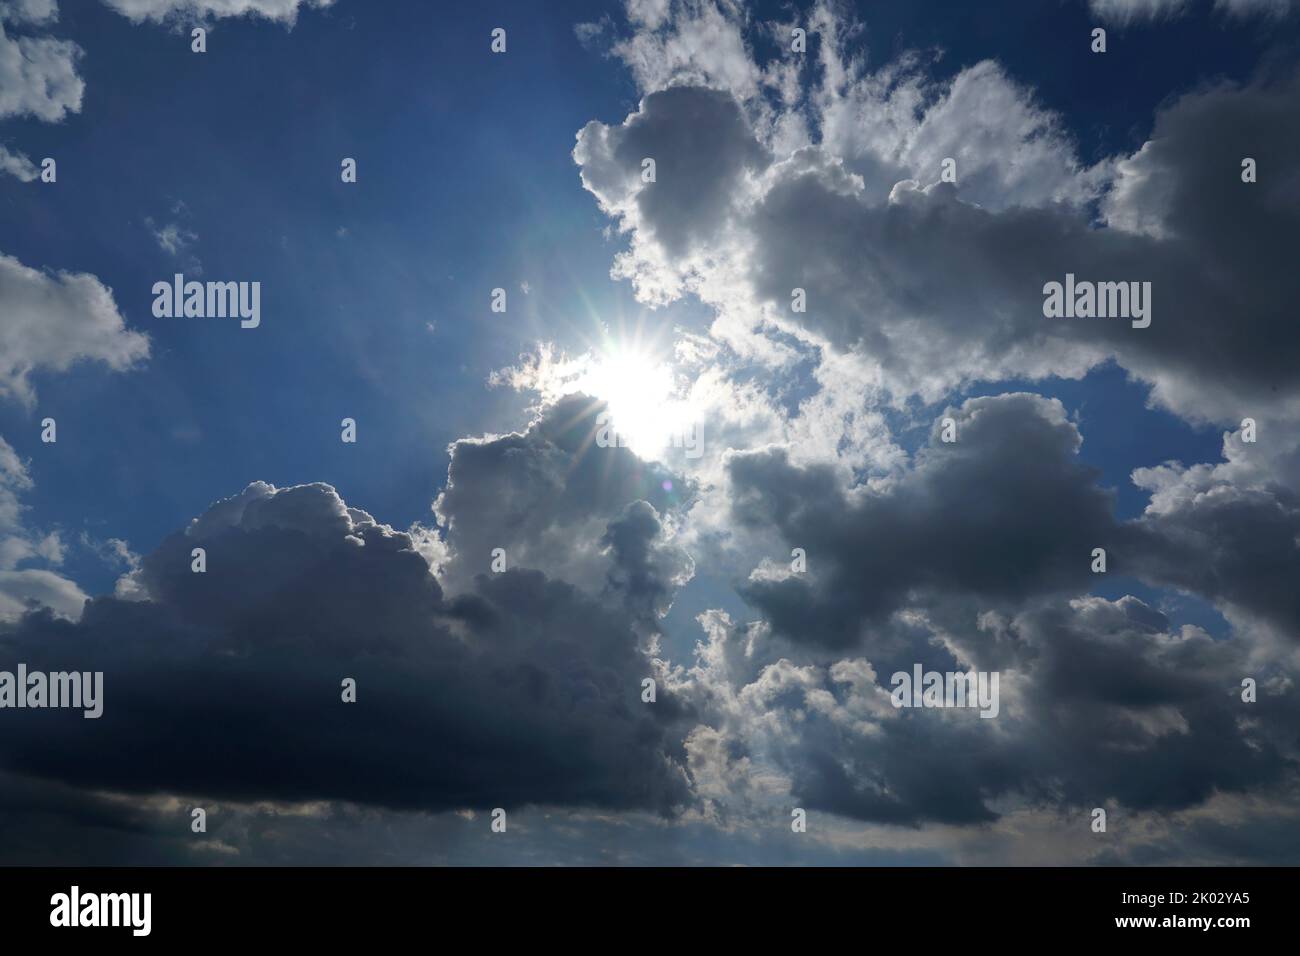 Germania, Baviera, alta Baviera, contea di Altötting, formazione di nubi, sole dietro nuvole di pioggia scura, Nimbostratus Foto Stock